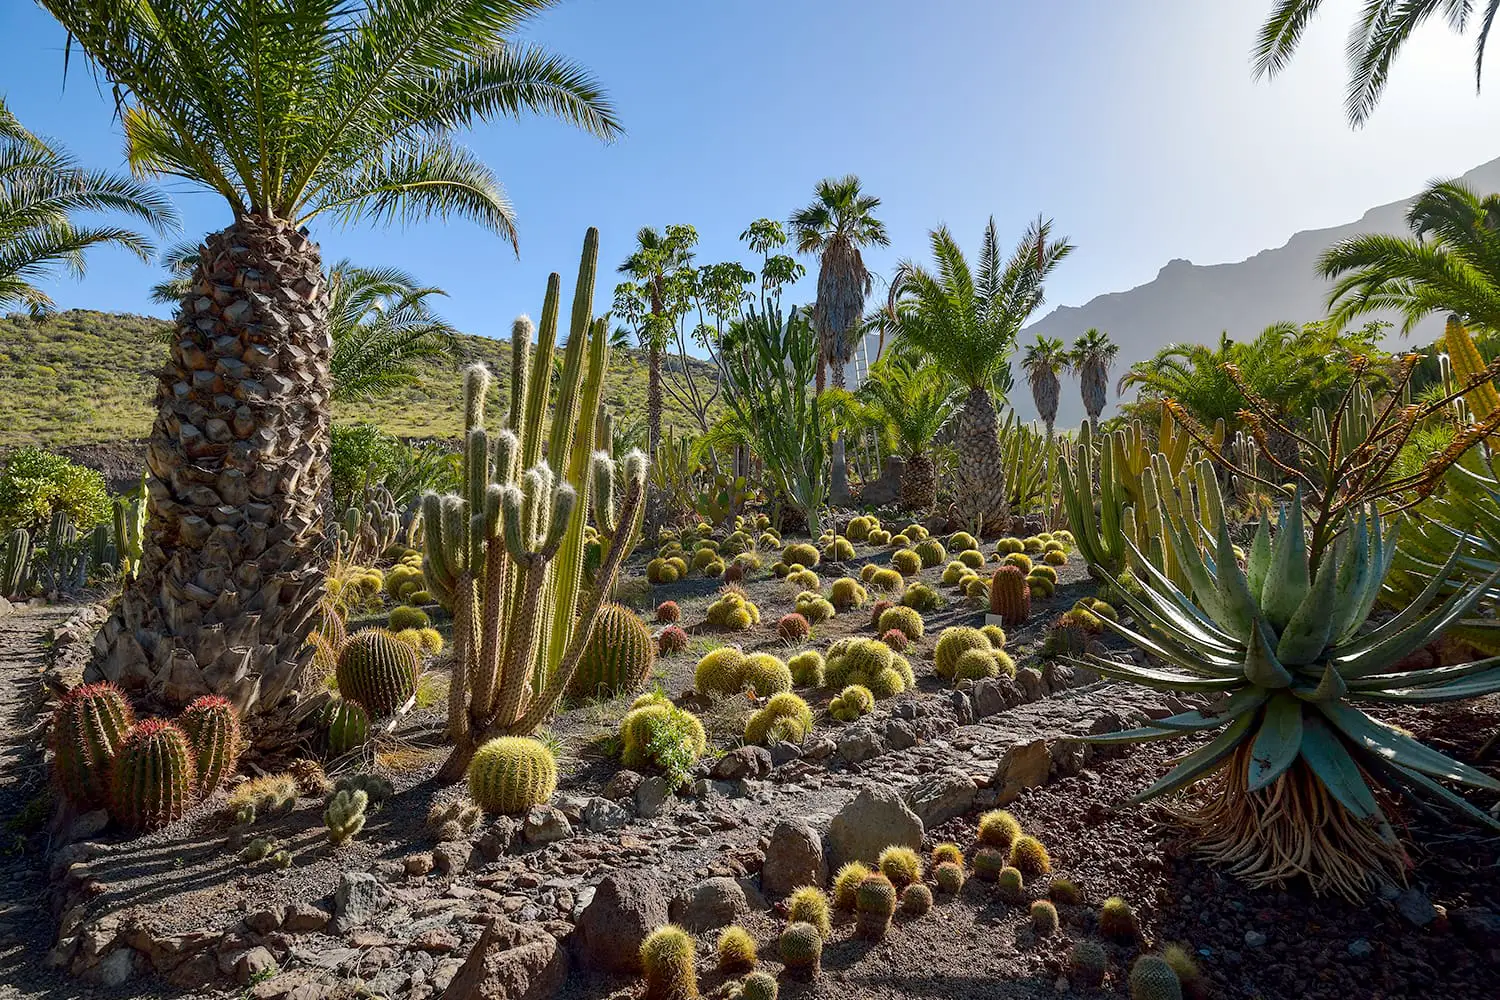 Cactus garden on Gran Canaria island, Spain